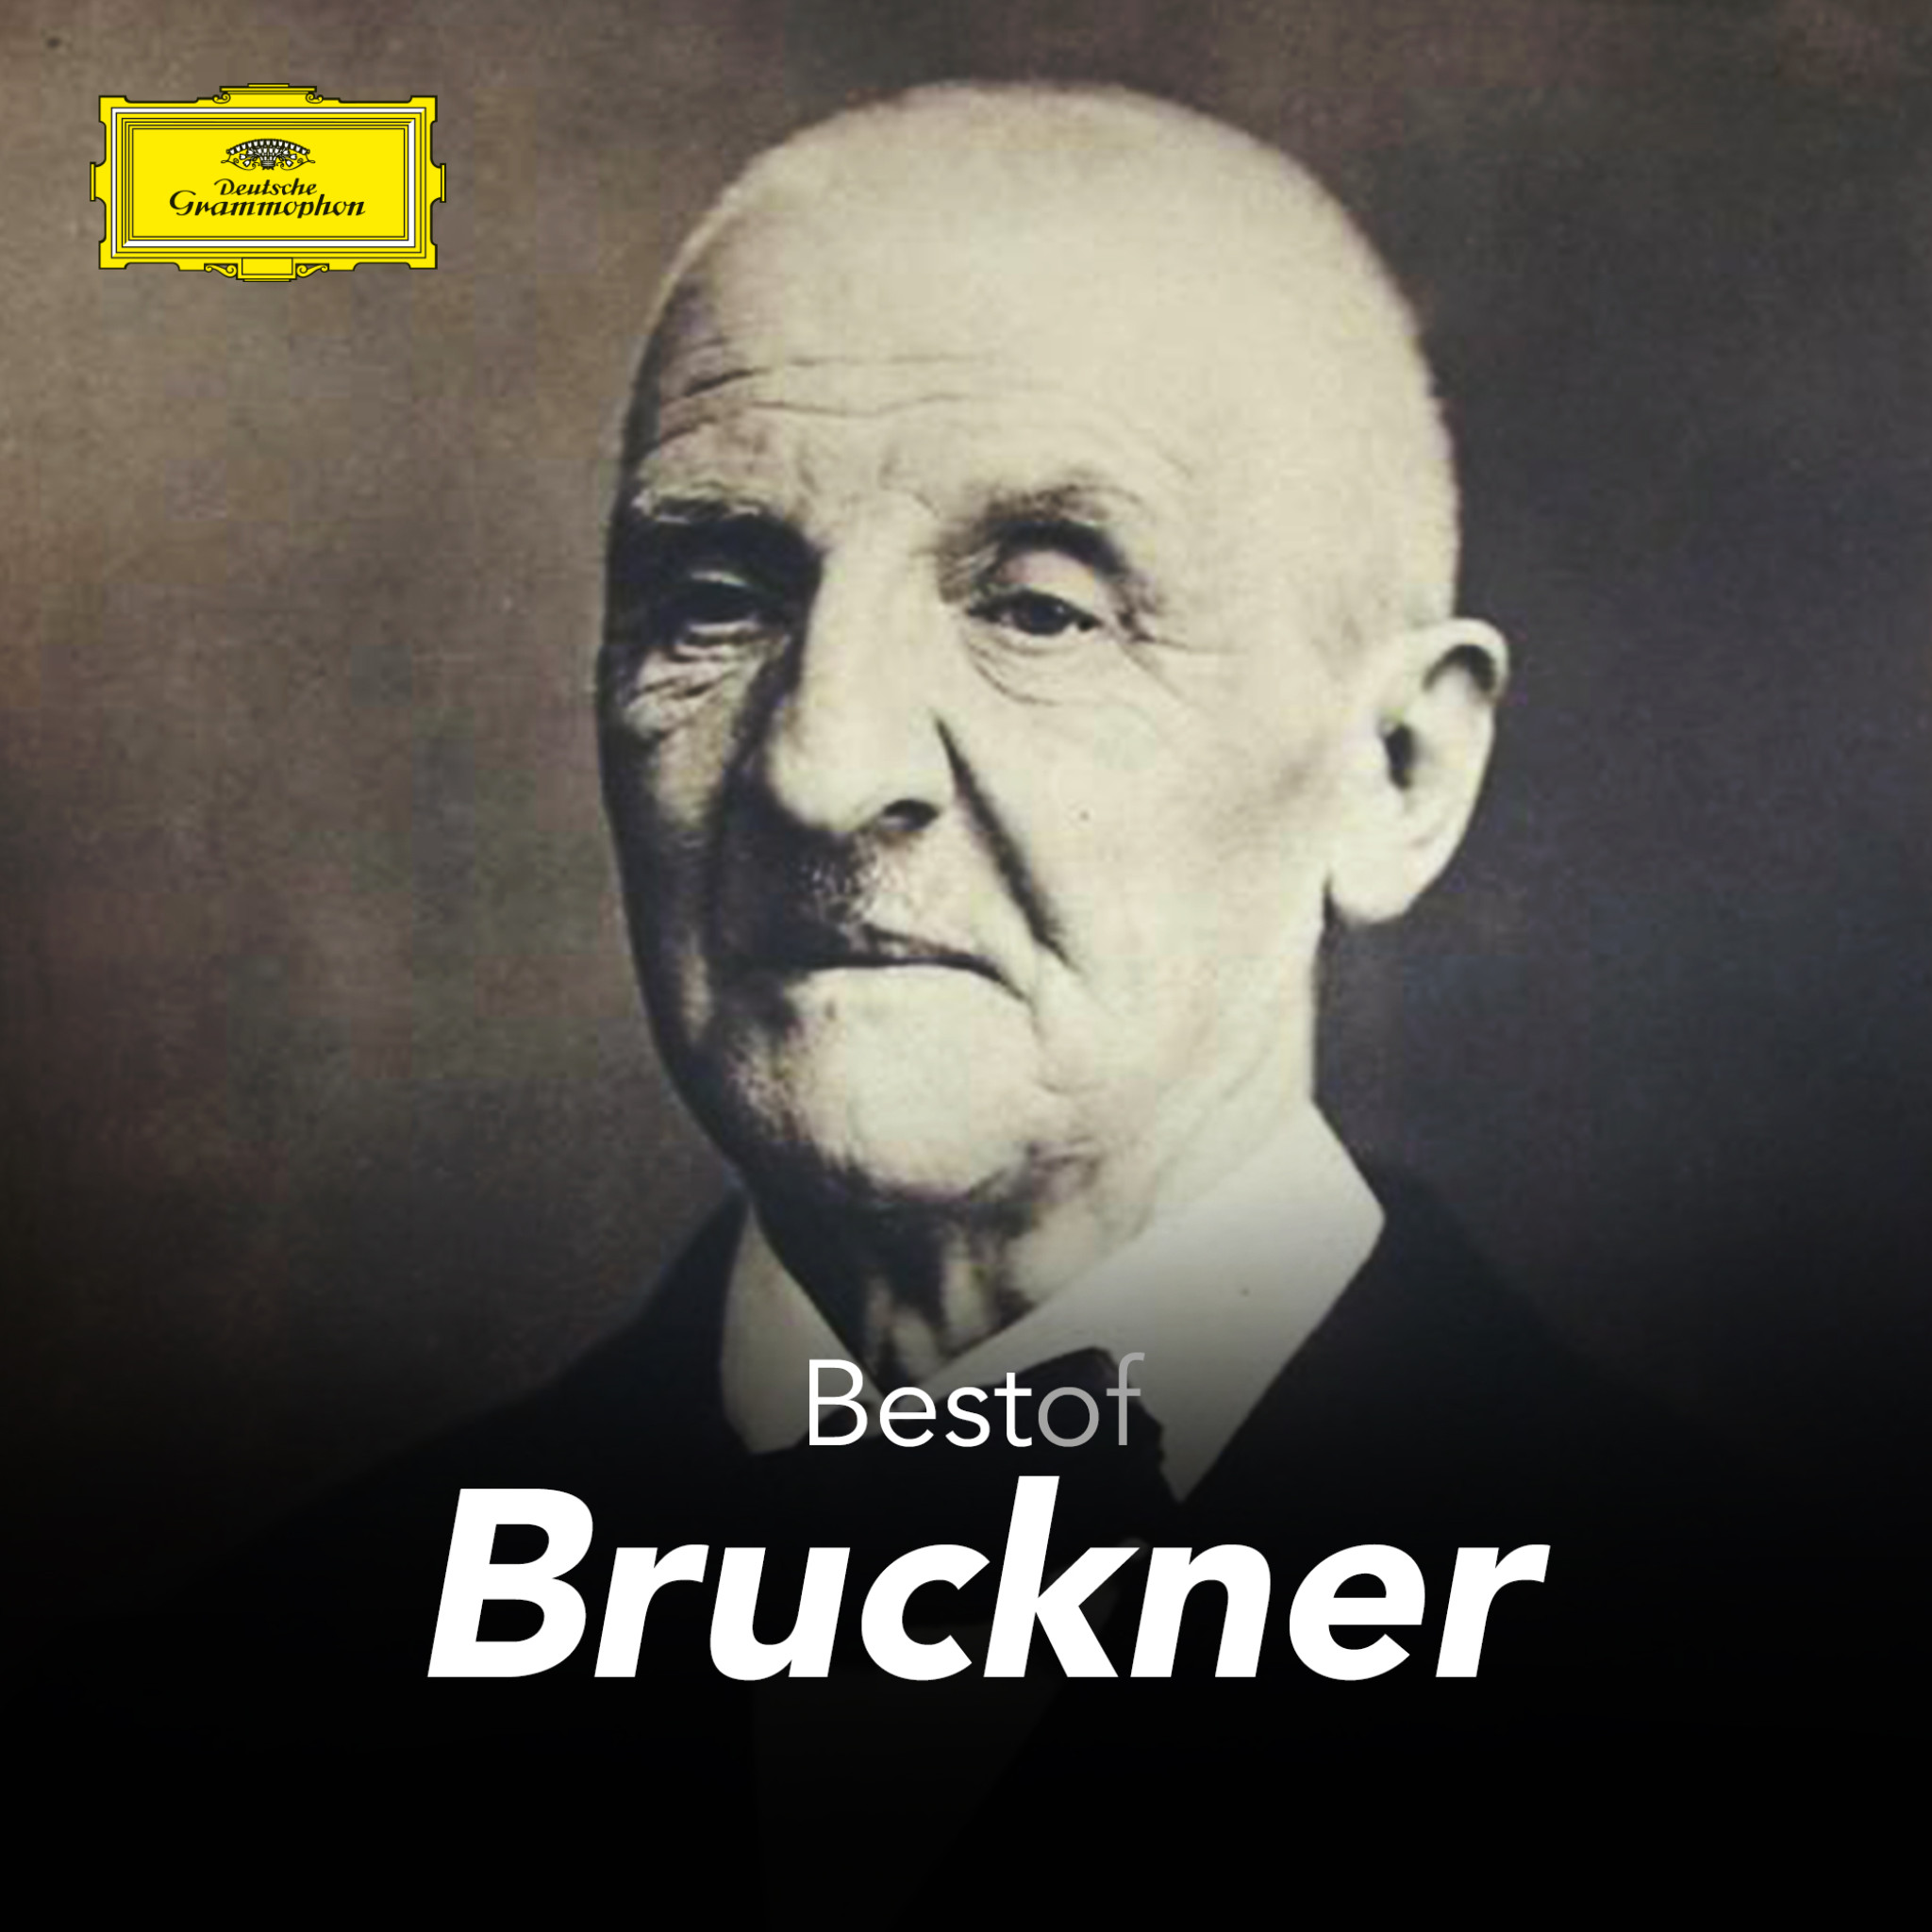 Bruckner - Best of